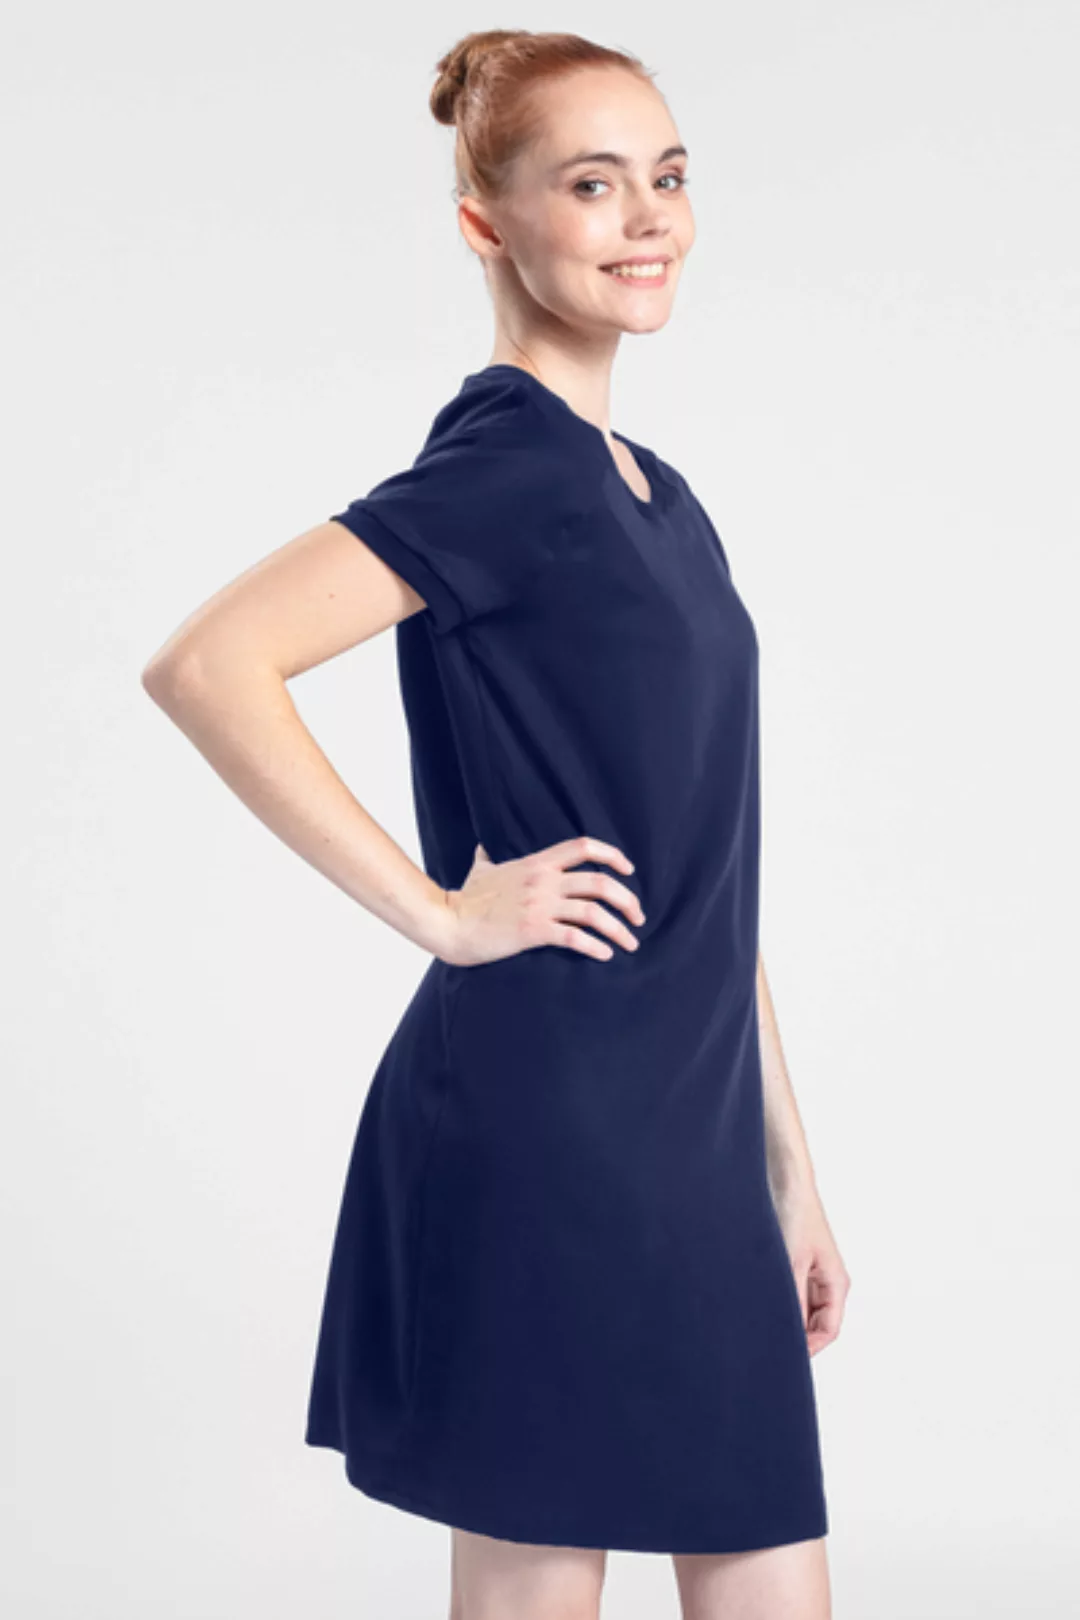 Kleid Aus Tencel - Black Diamant günstig online kaufen